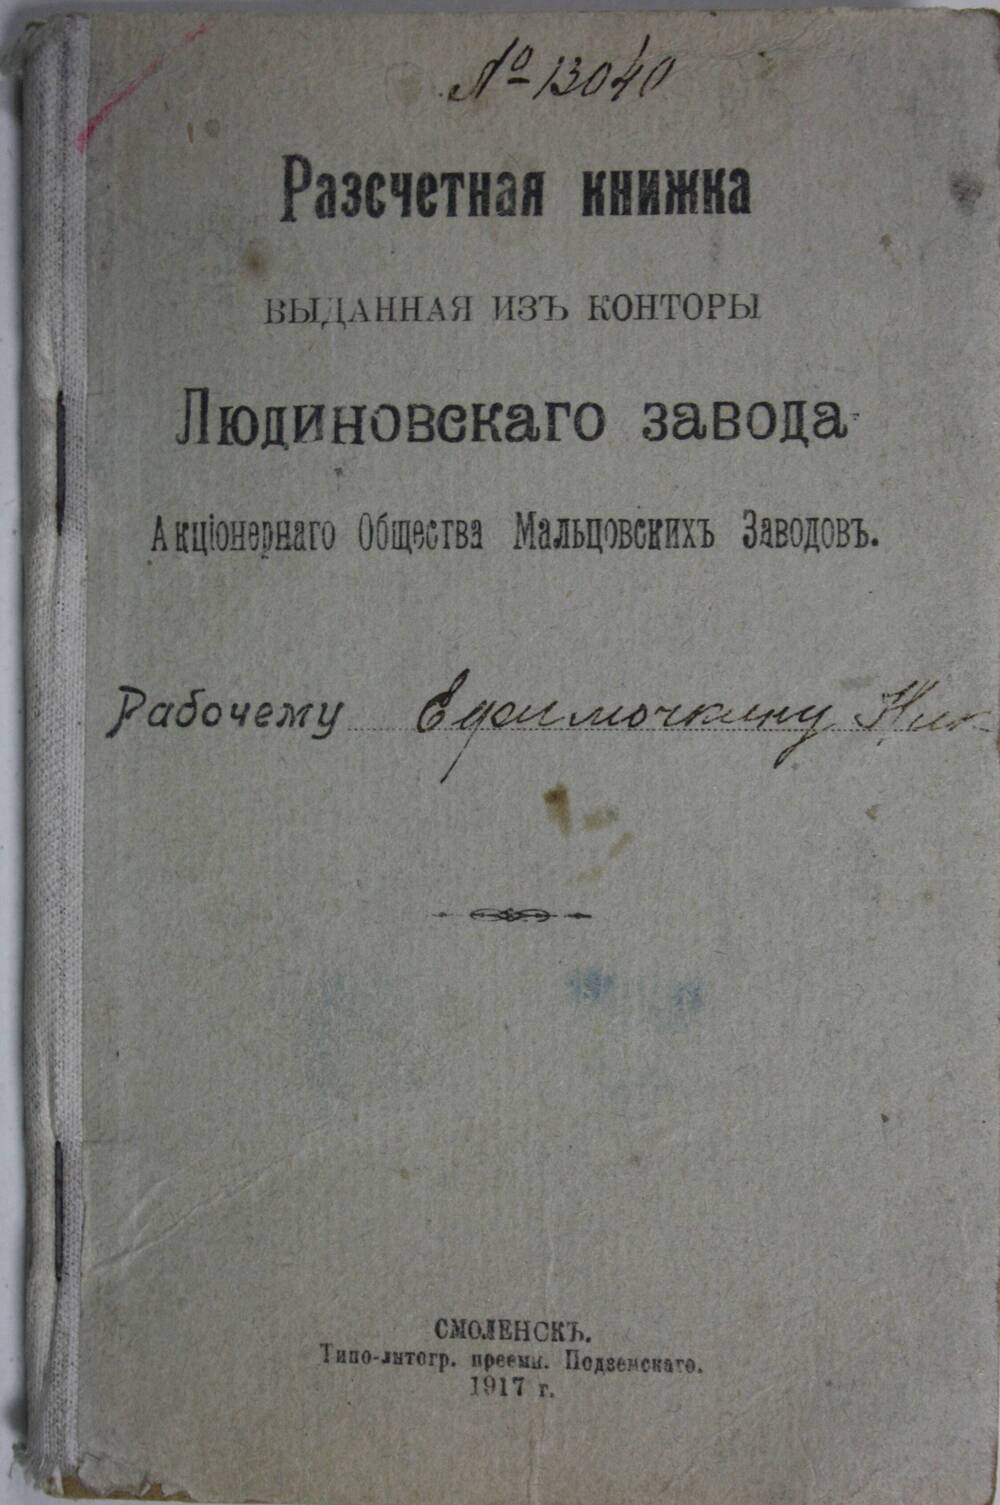 Расчетная книжка № 13040 рабочего Ефимочкина Н. выдана из конторы Людиновского завода АОМЗ